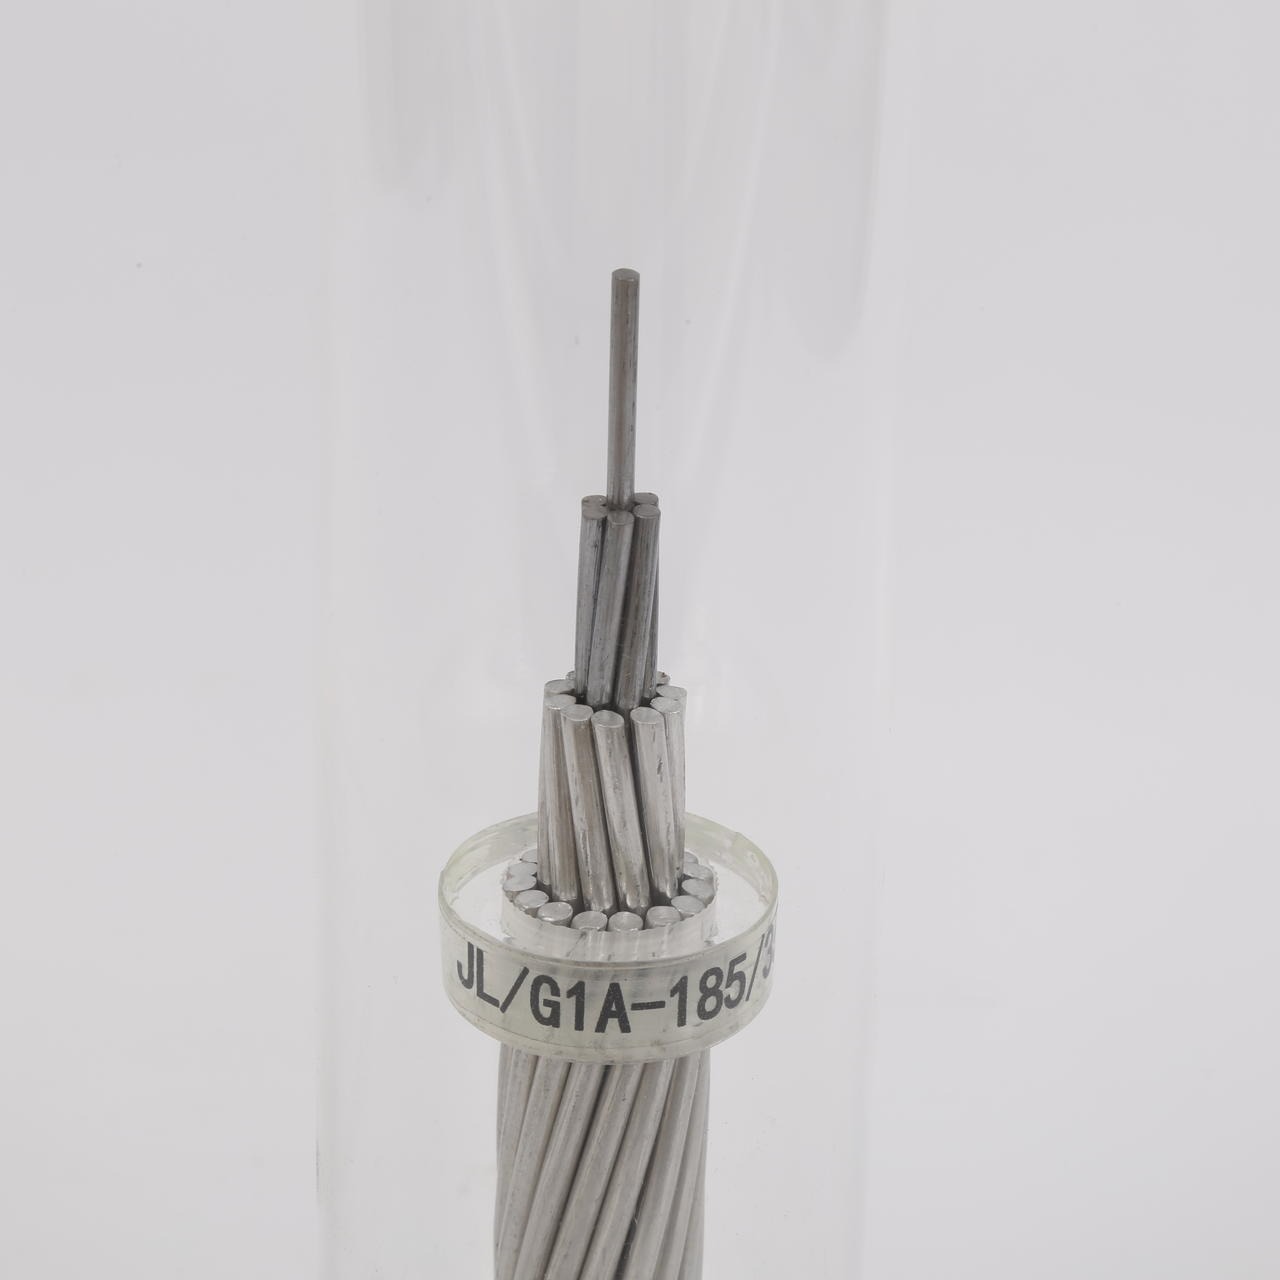 安通电线电缆有限公司铝包钢芯铝绞线，铝包钢绞线，JL/LB20A-185/25